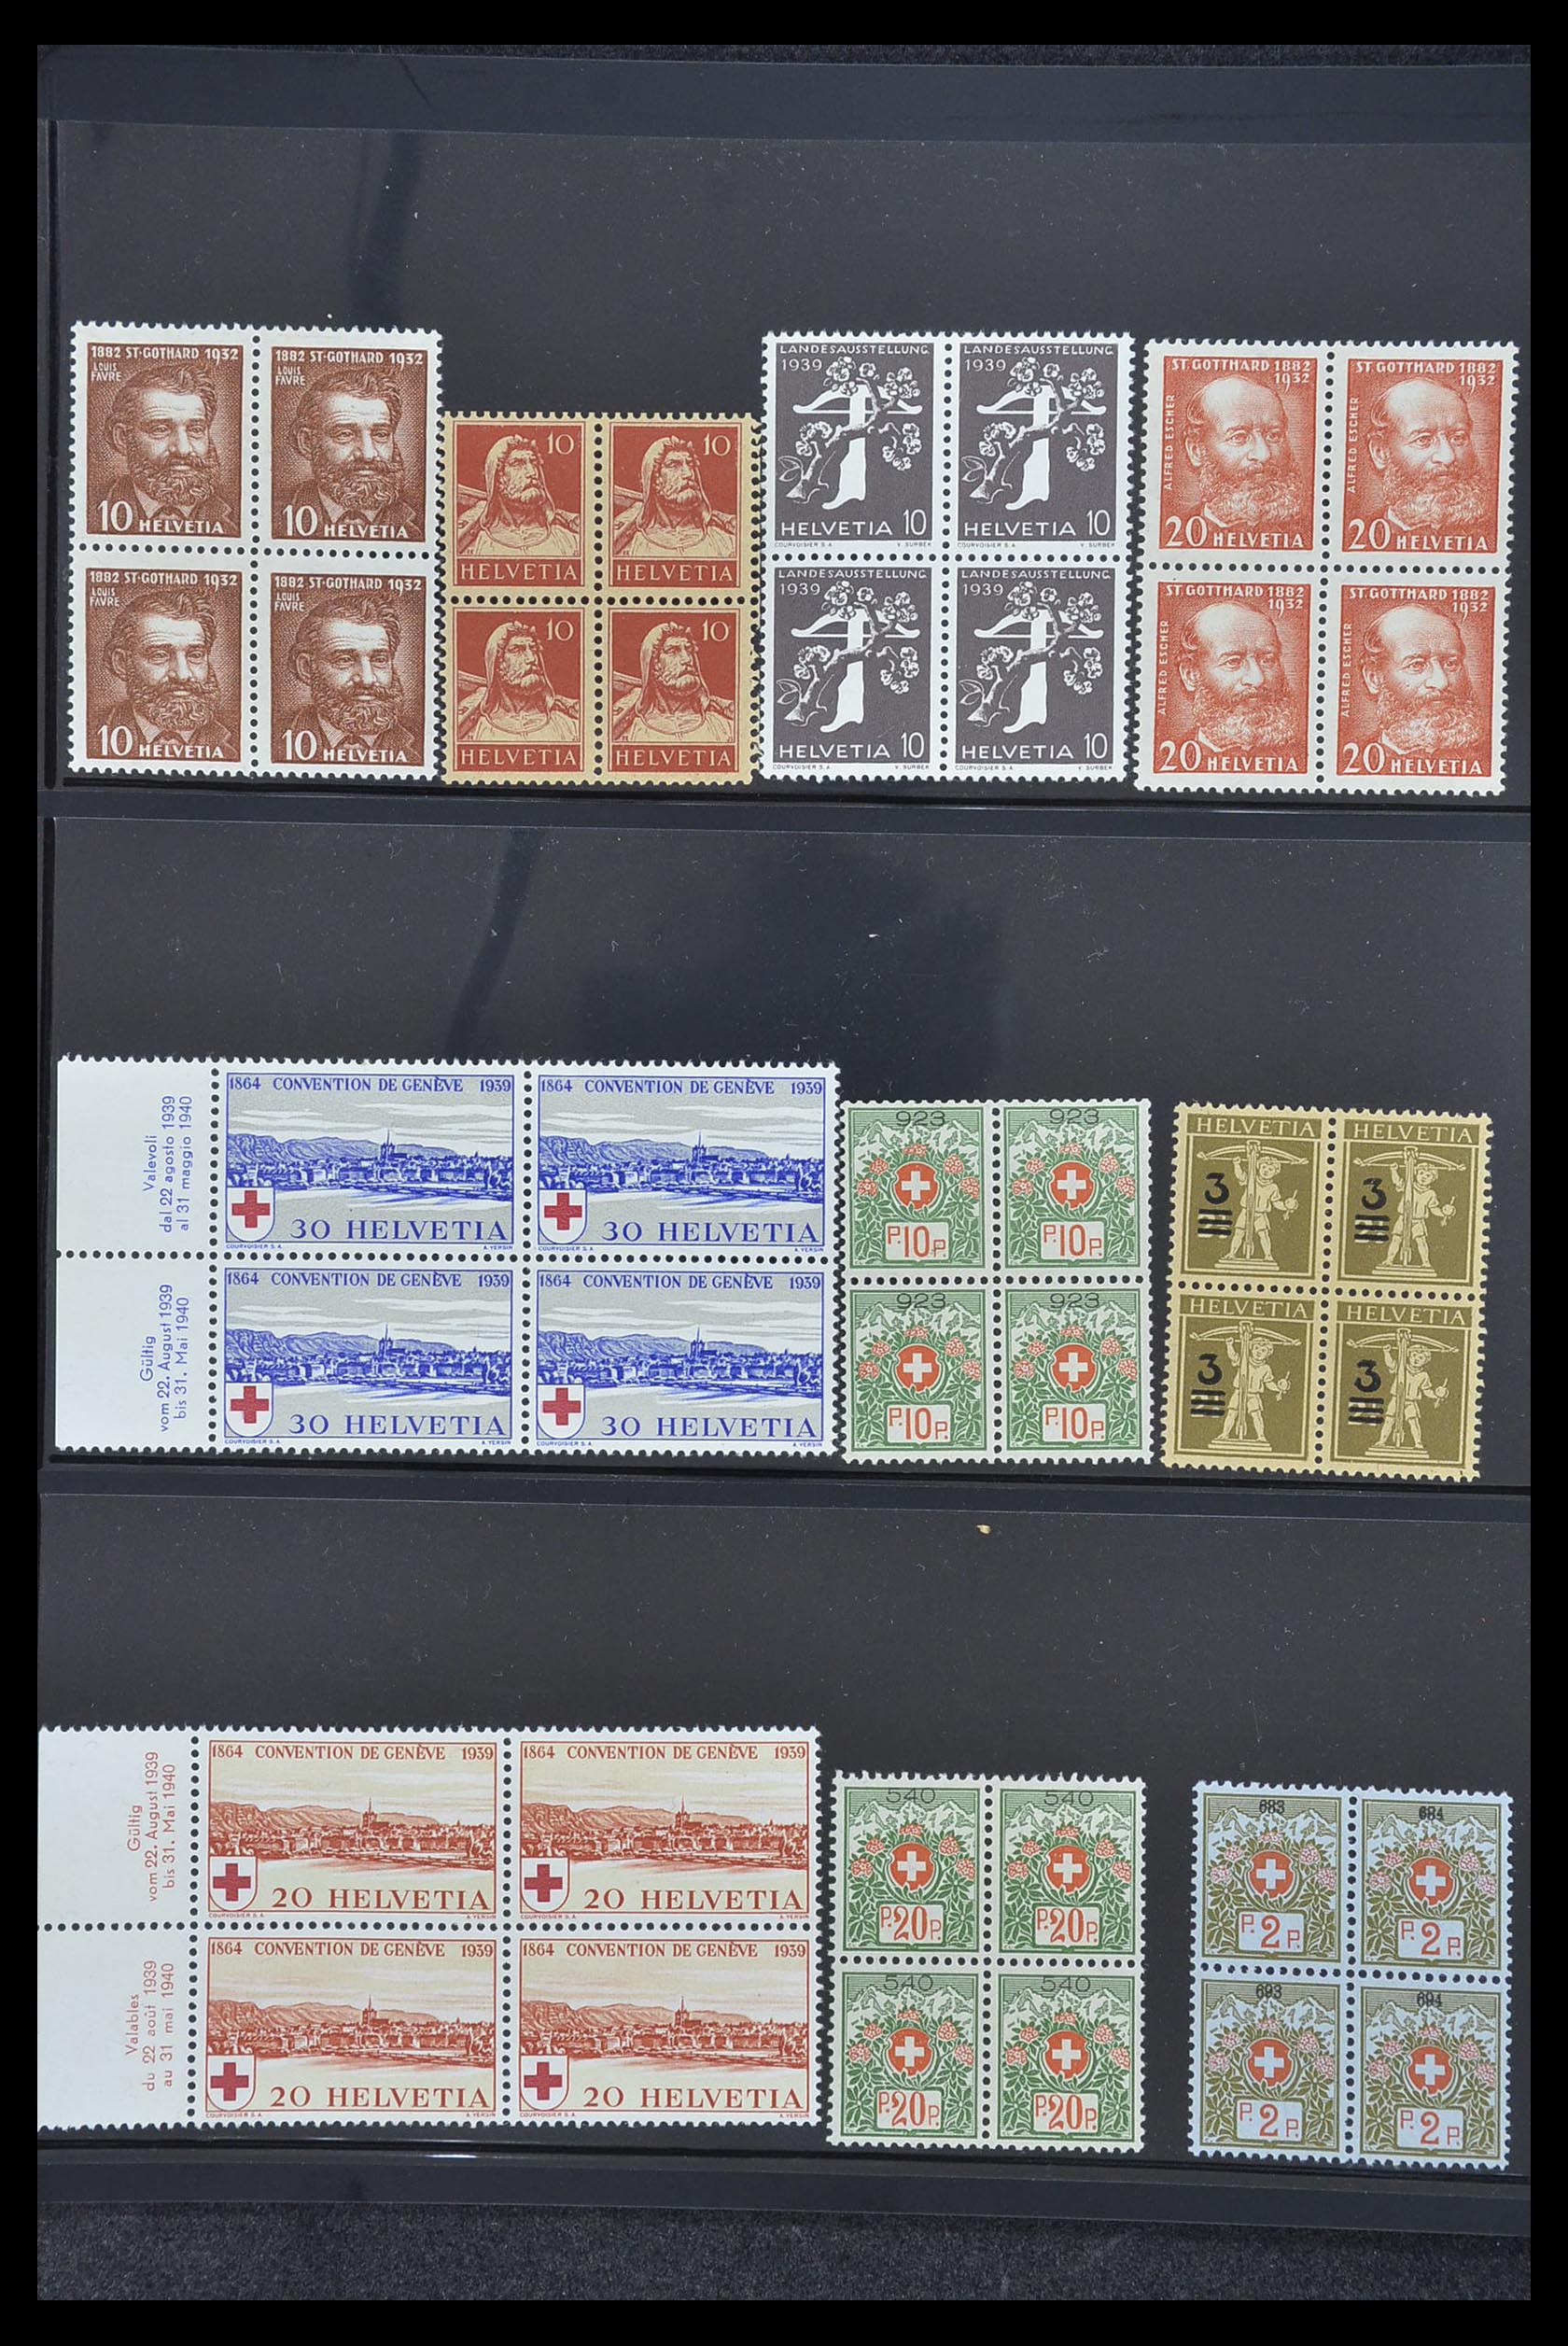 33926 004 - Postzegelverzameling 33926 Zwitserland uitzoekpartij 1850-1997.